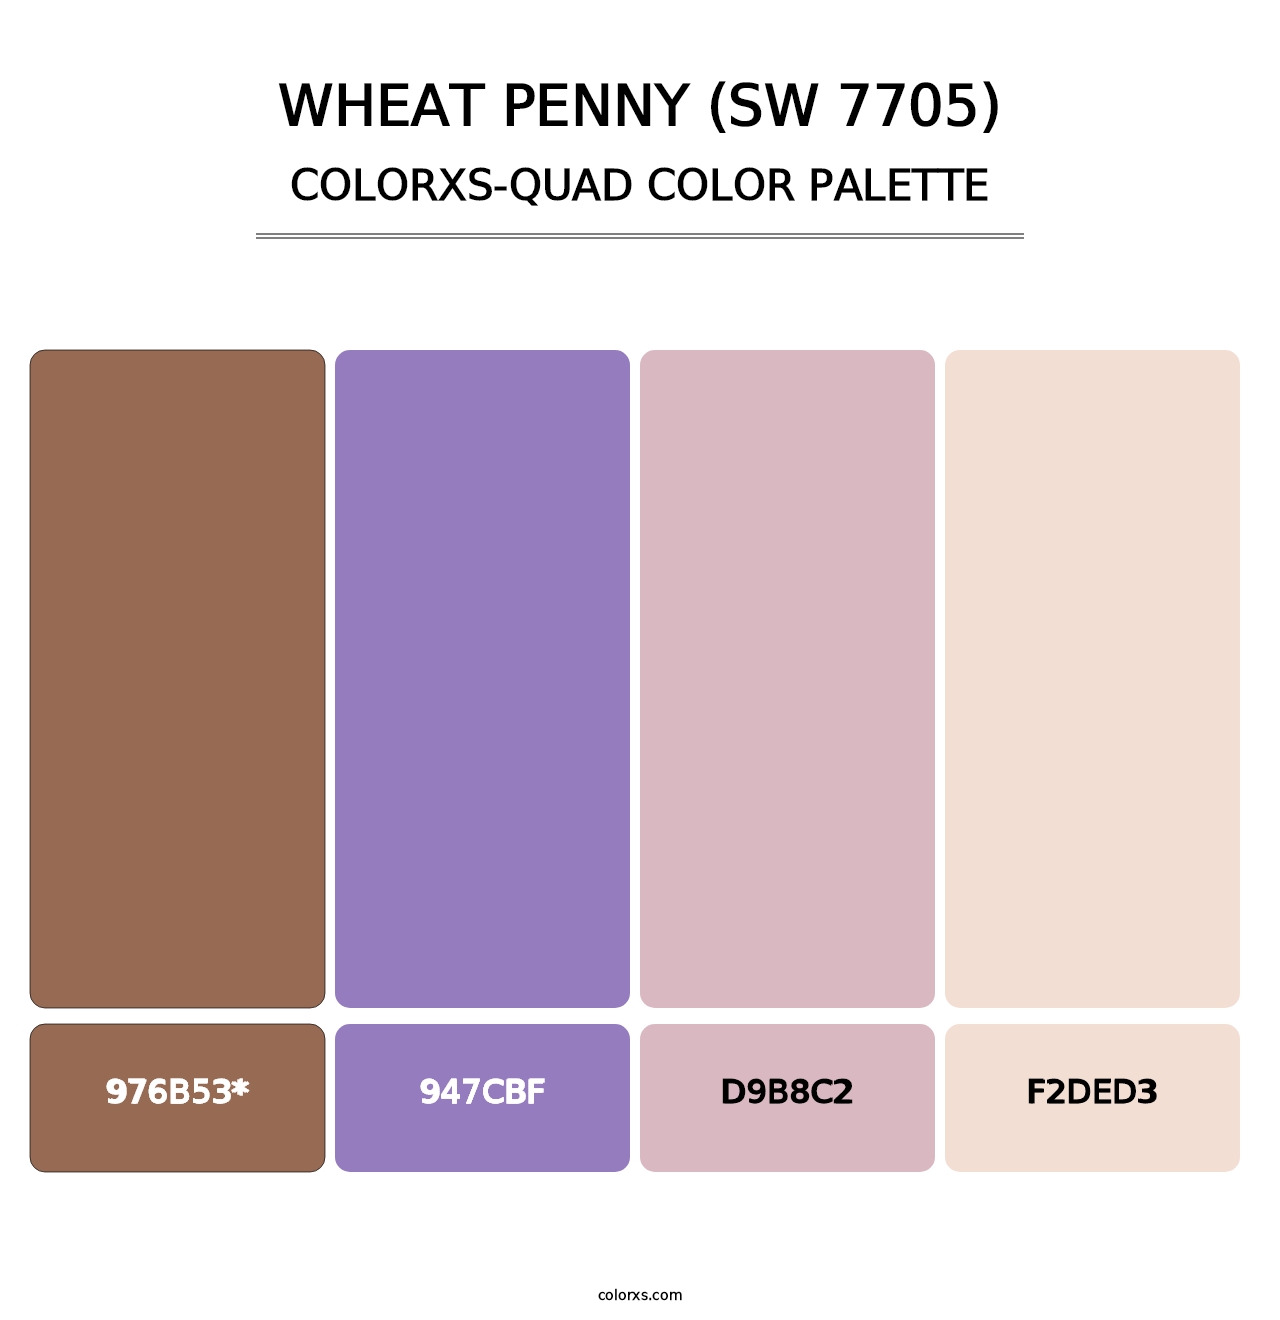 Wheat Penny (SW 7705) - Colorxs Quad Palette